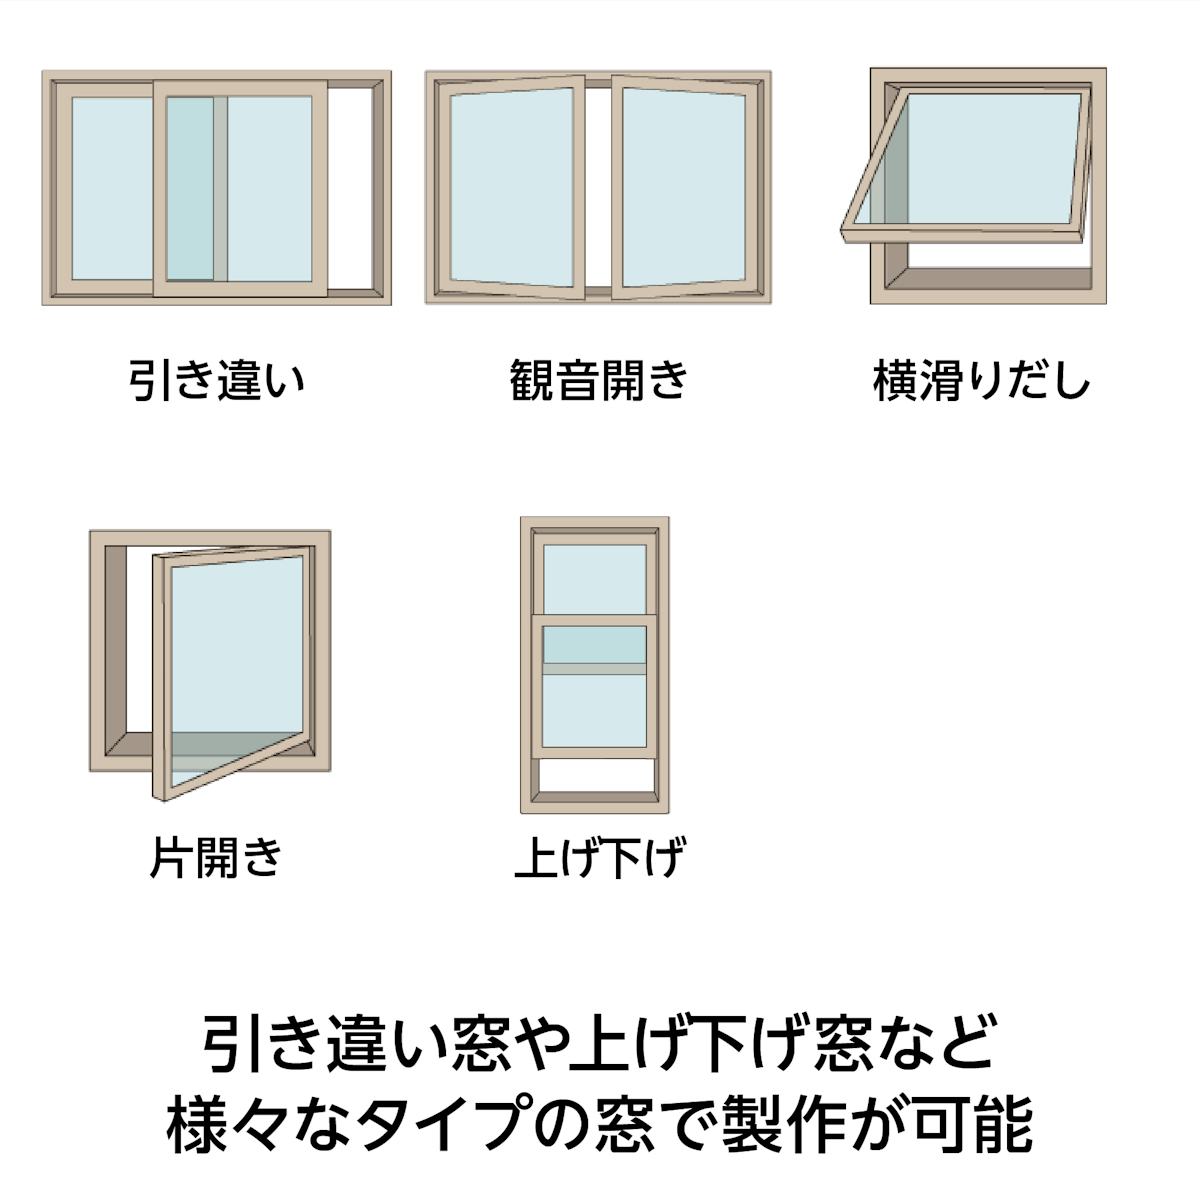 木枠選択ガラスシステム - FIX窓だけでなく引き違い窓・上げ下げ窓など様々なタイプの窓で製作可能